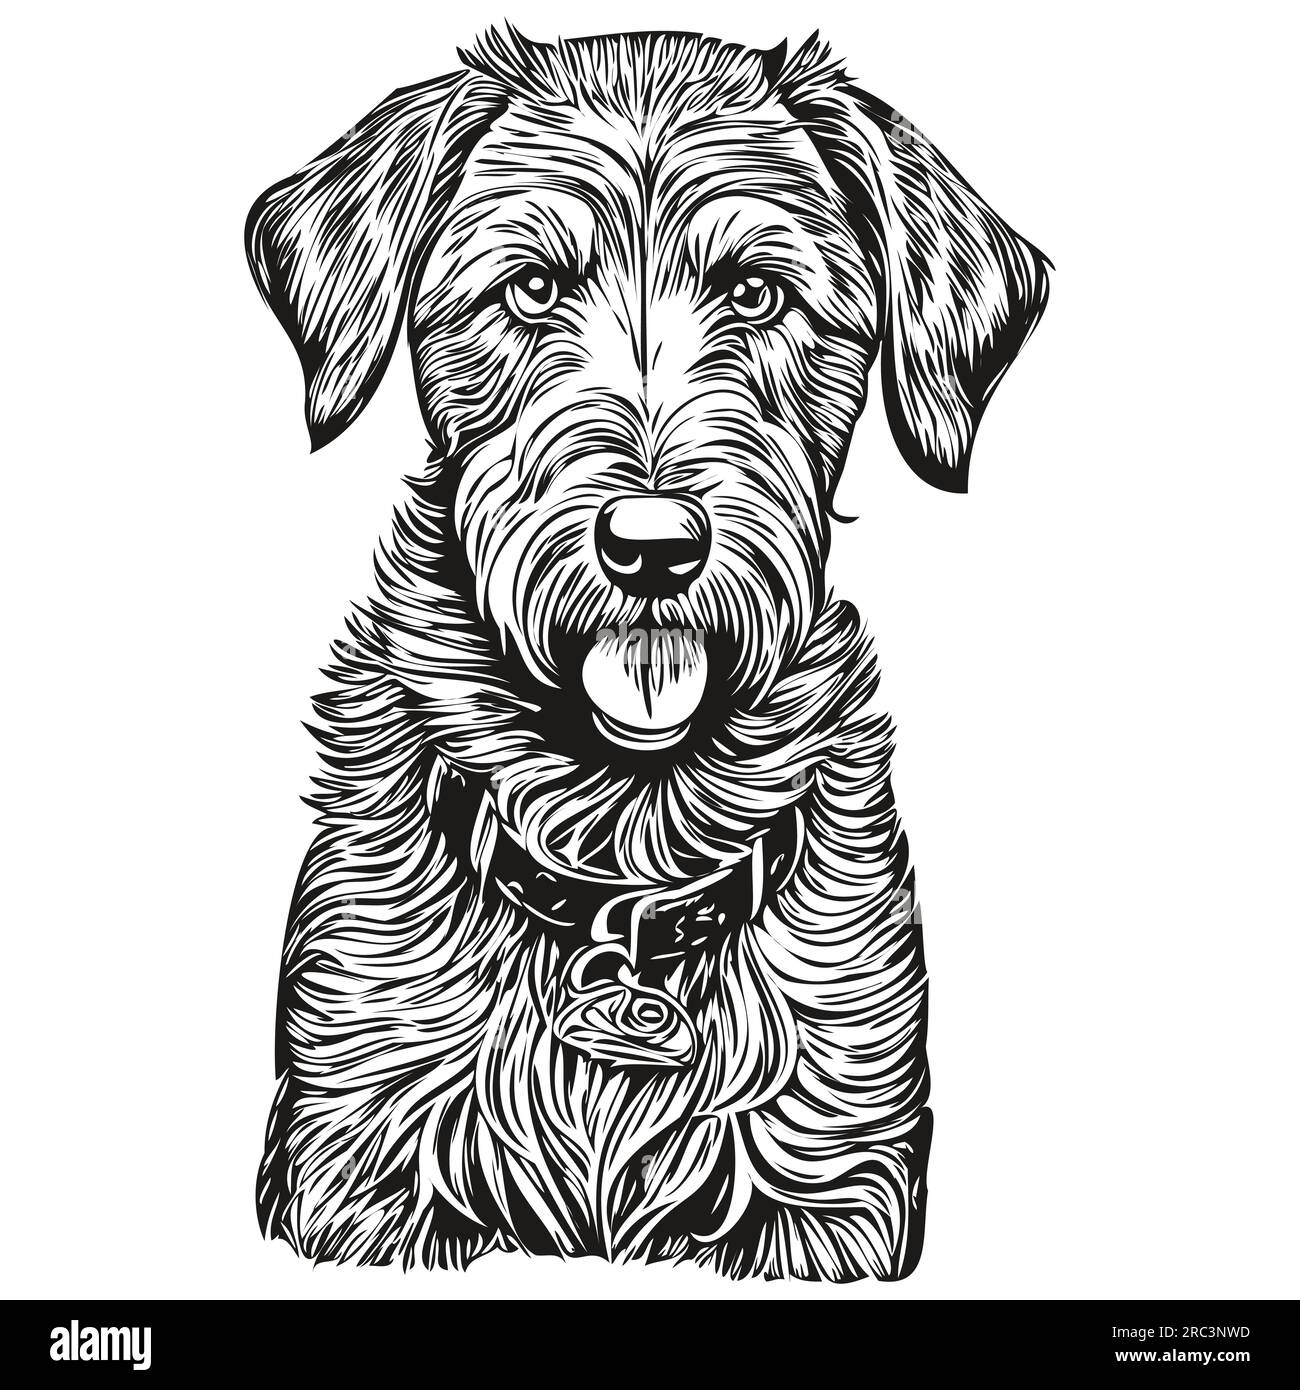 Airedale Terrier Dog Logo schwarz-weiß, klassischer niedlicher Hundekopf eingraviert Stock Vektor